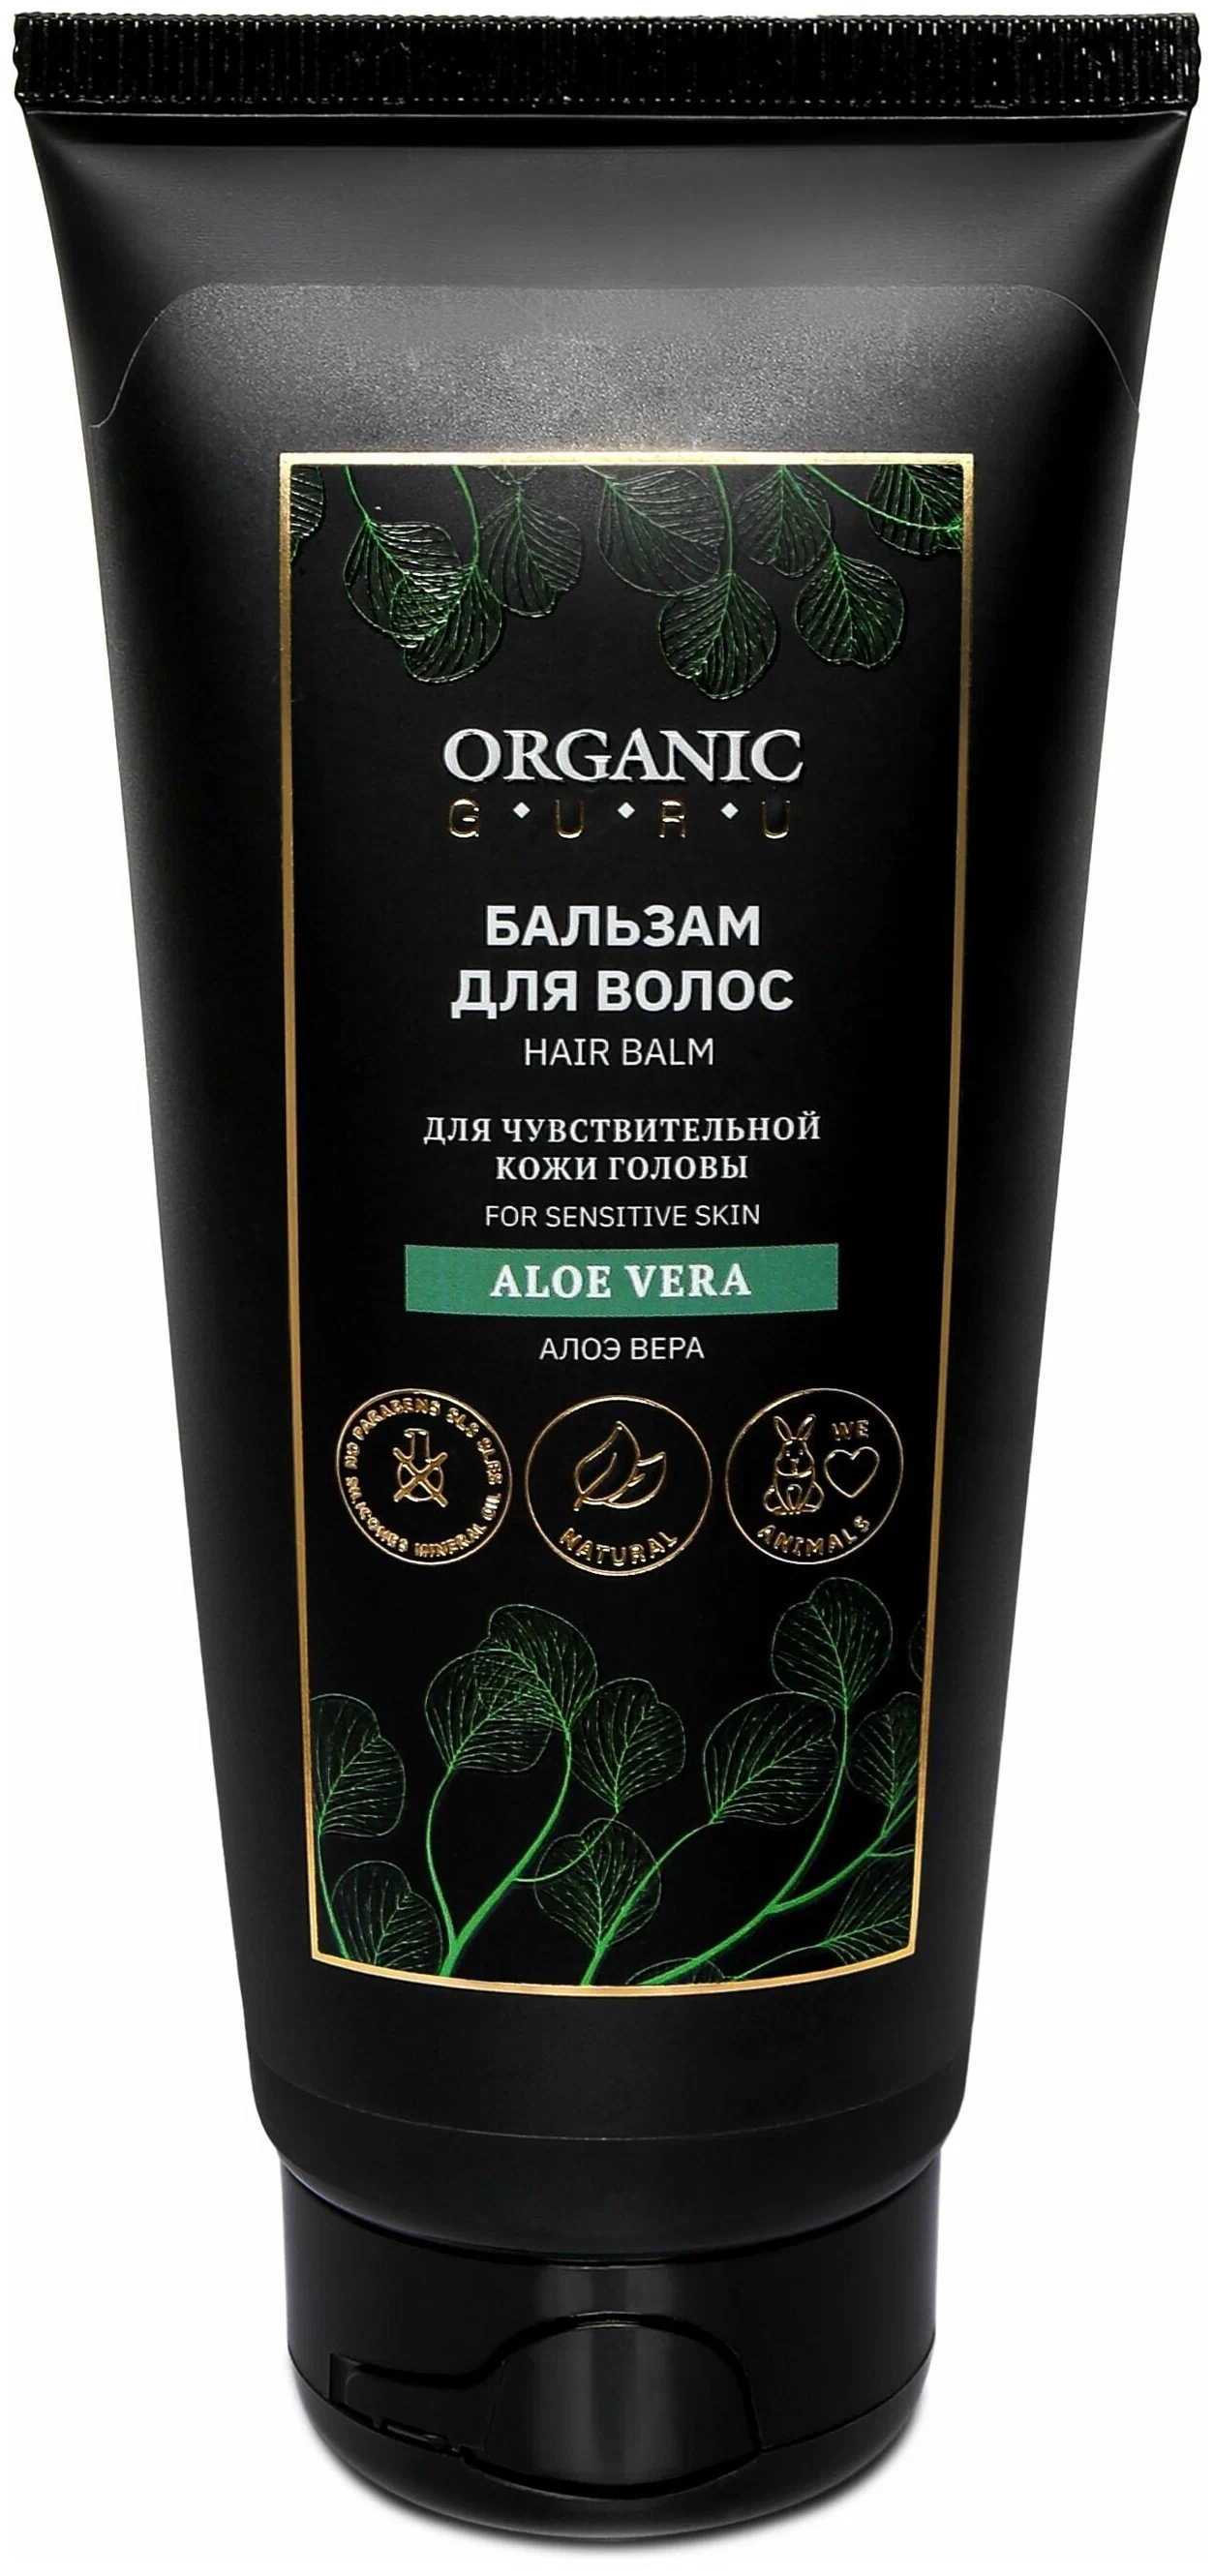 Бальзам-ополаскиватель для волос Organic Guru Aloe Vera для чувствительной кожи, 200 мл бальзам для волос витэкс aloe vera 450 мл